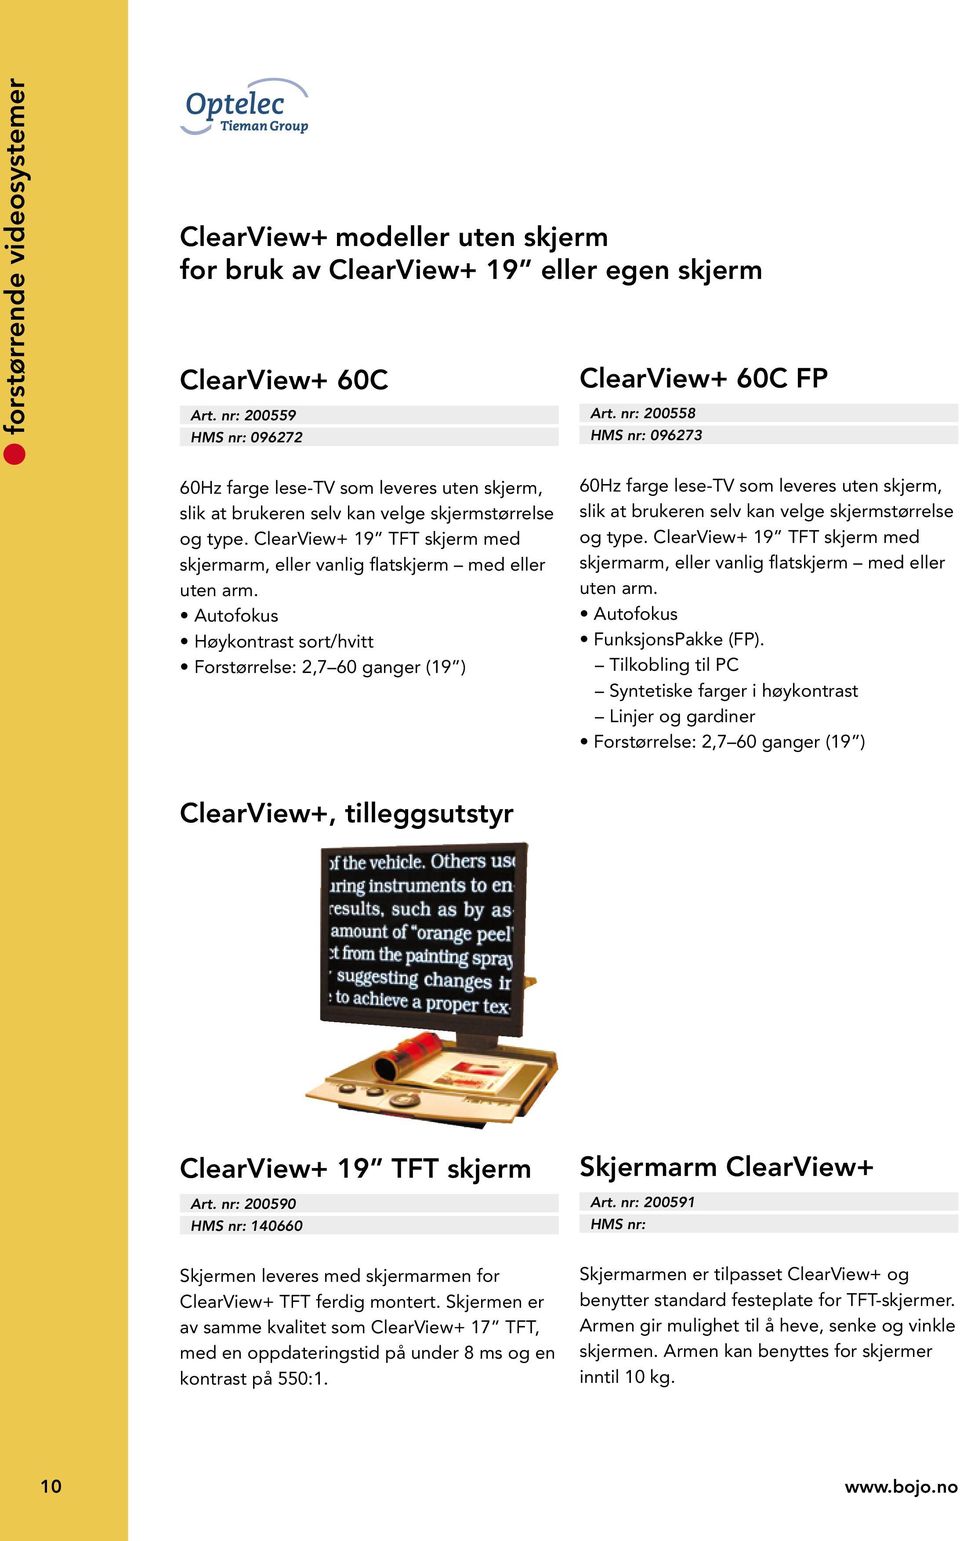 ClearView+ 19 TFT skjerm med skjermarm, eller vanlig flatskjerm med eller uten arm.